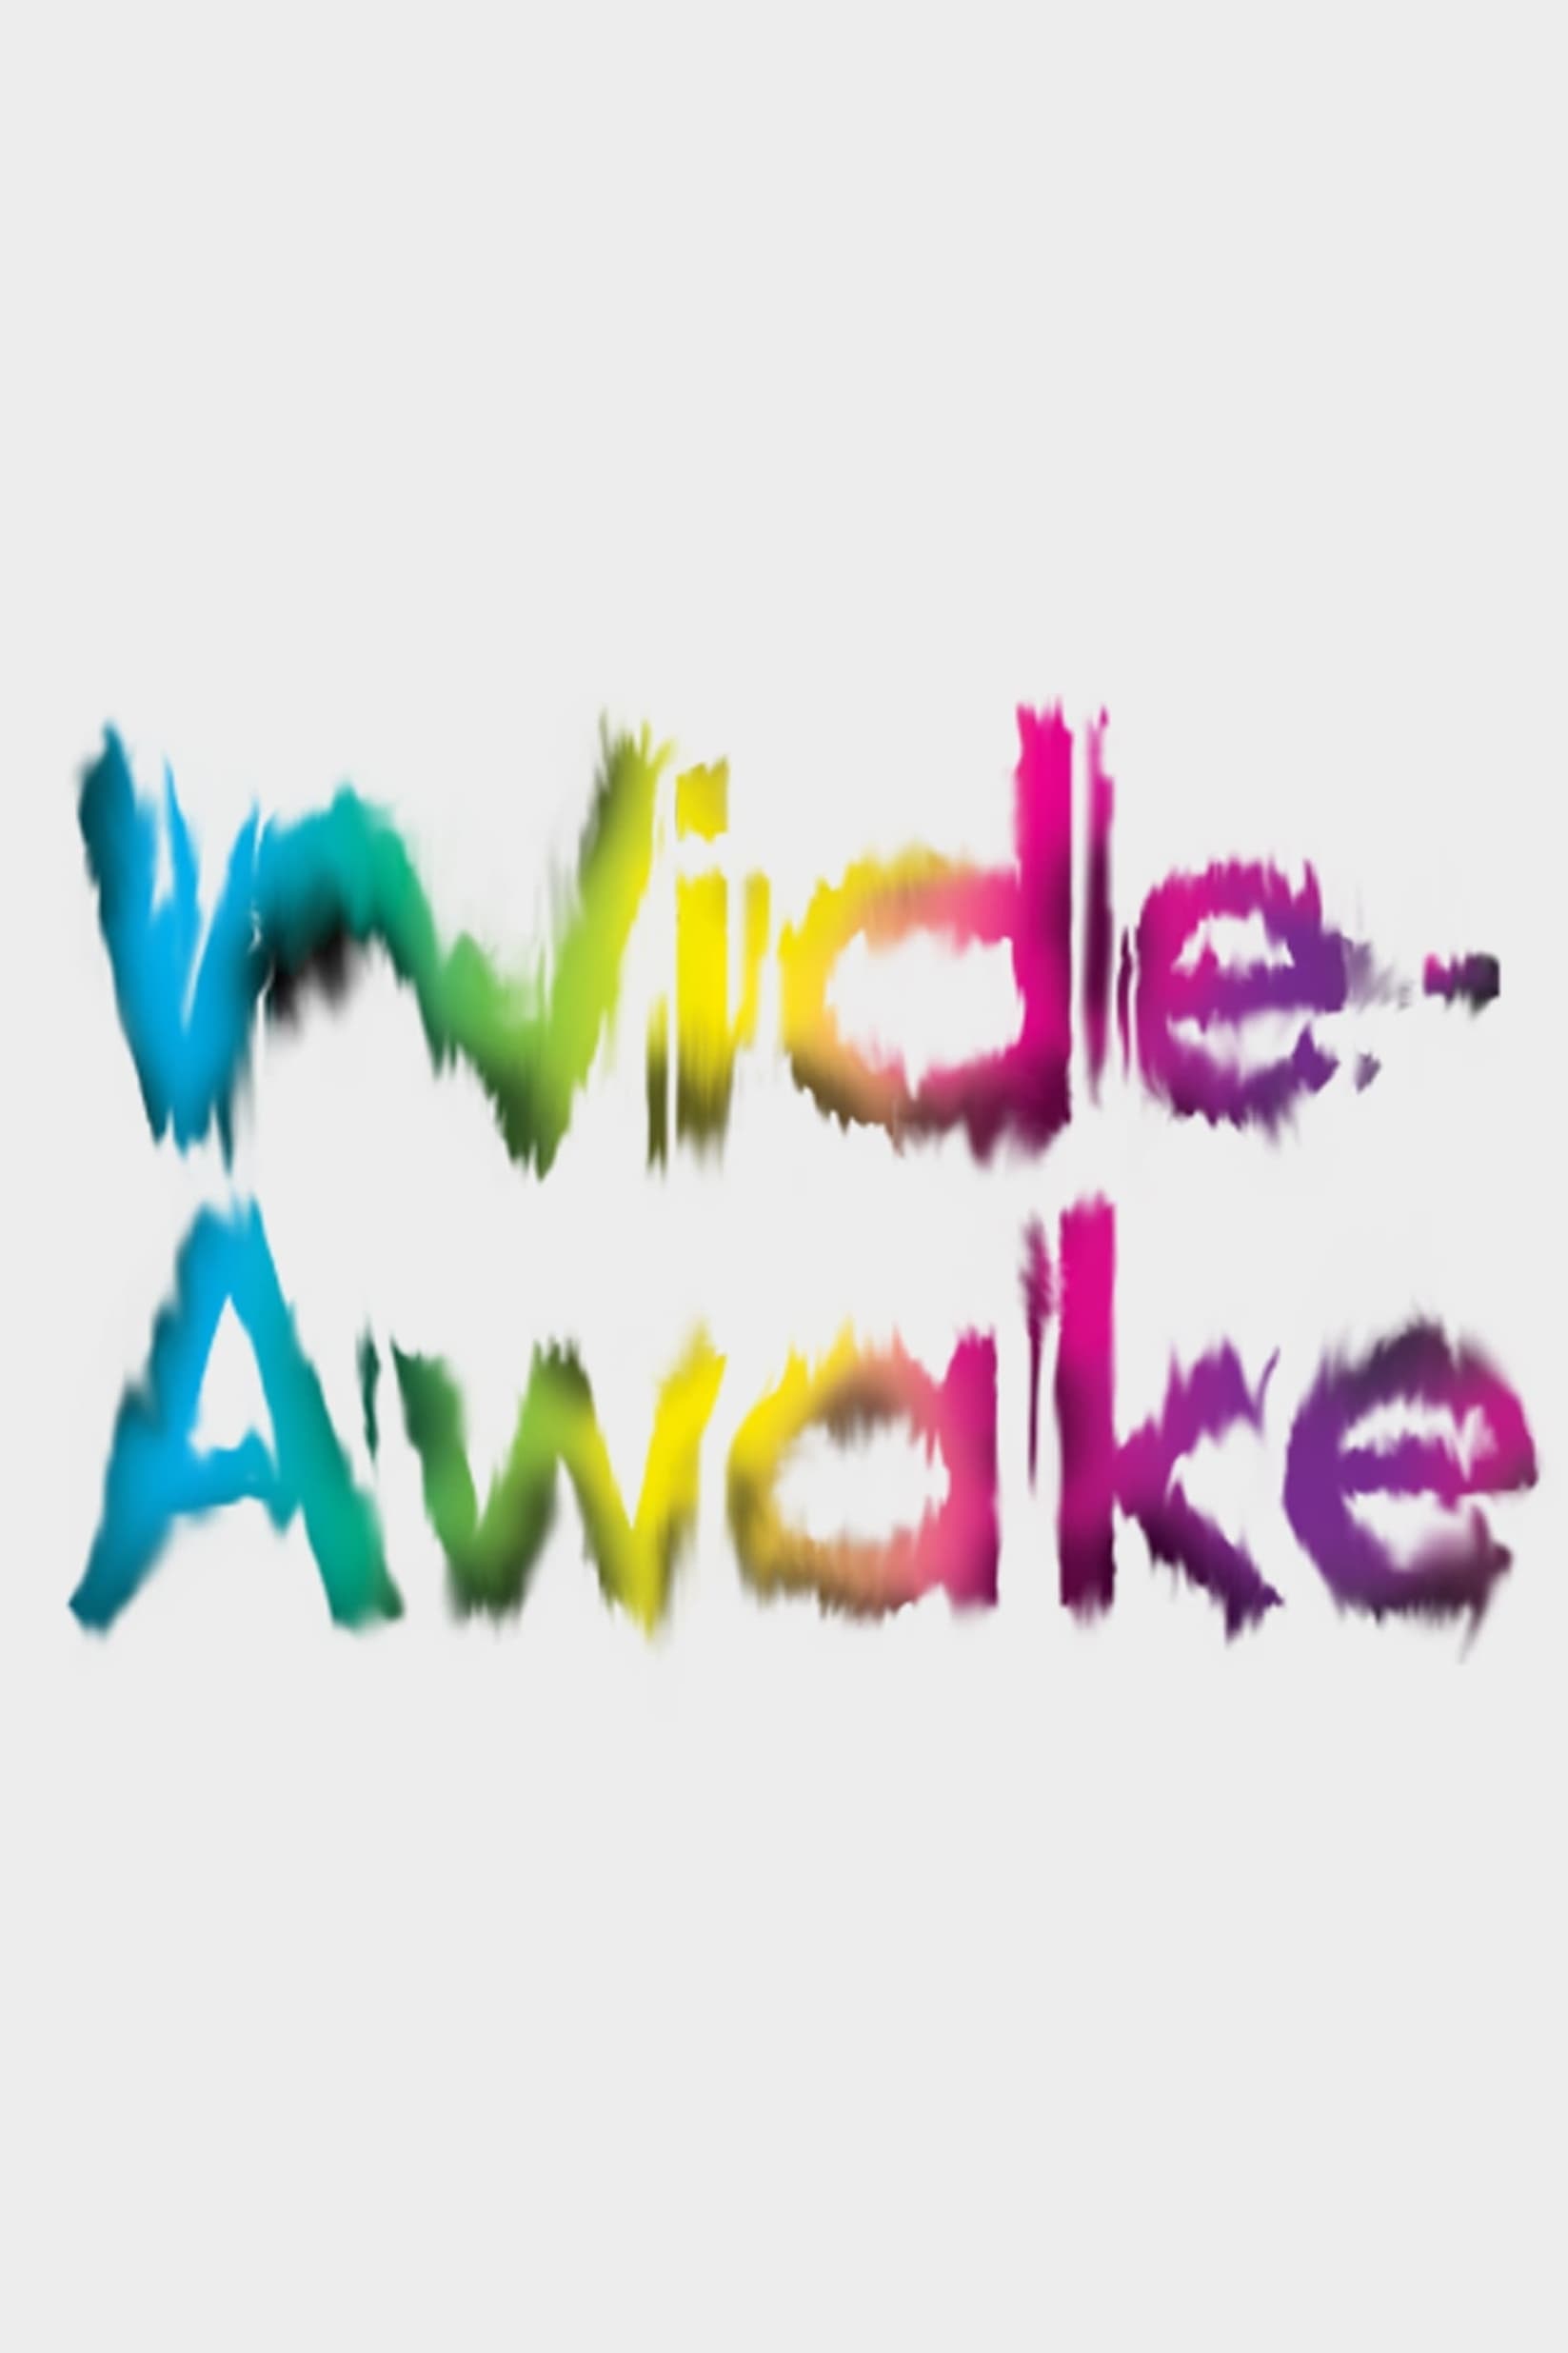 Wide-Awake (2012)